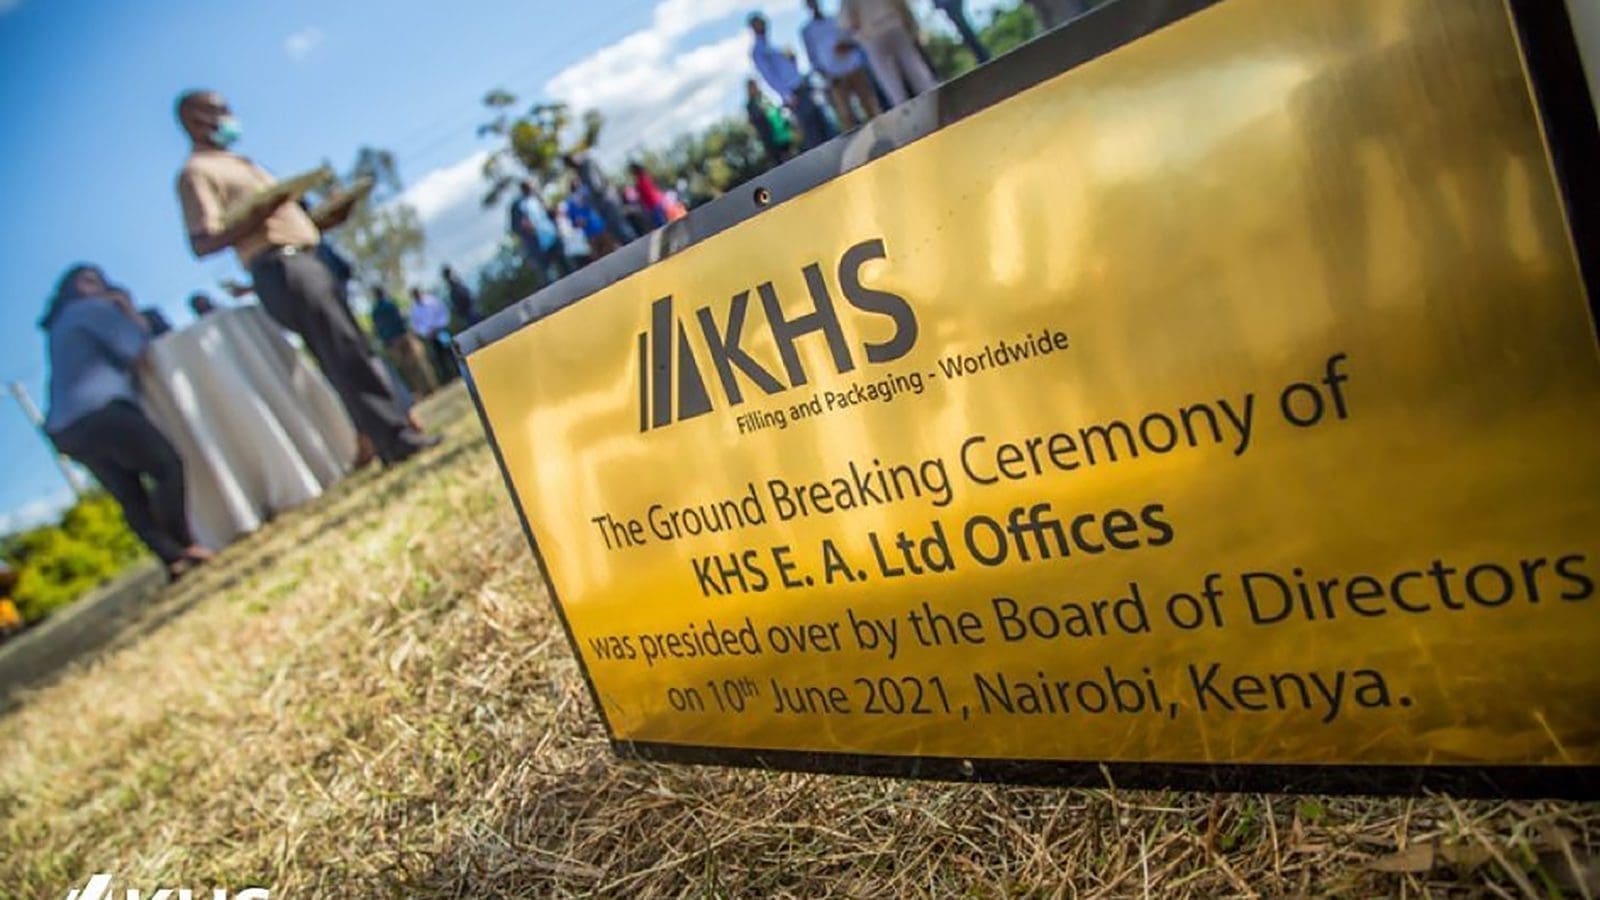 Germany packaging equipment supplier KHS establishes modern regional center in Kenya